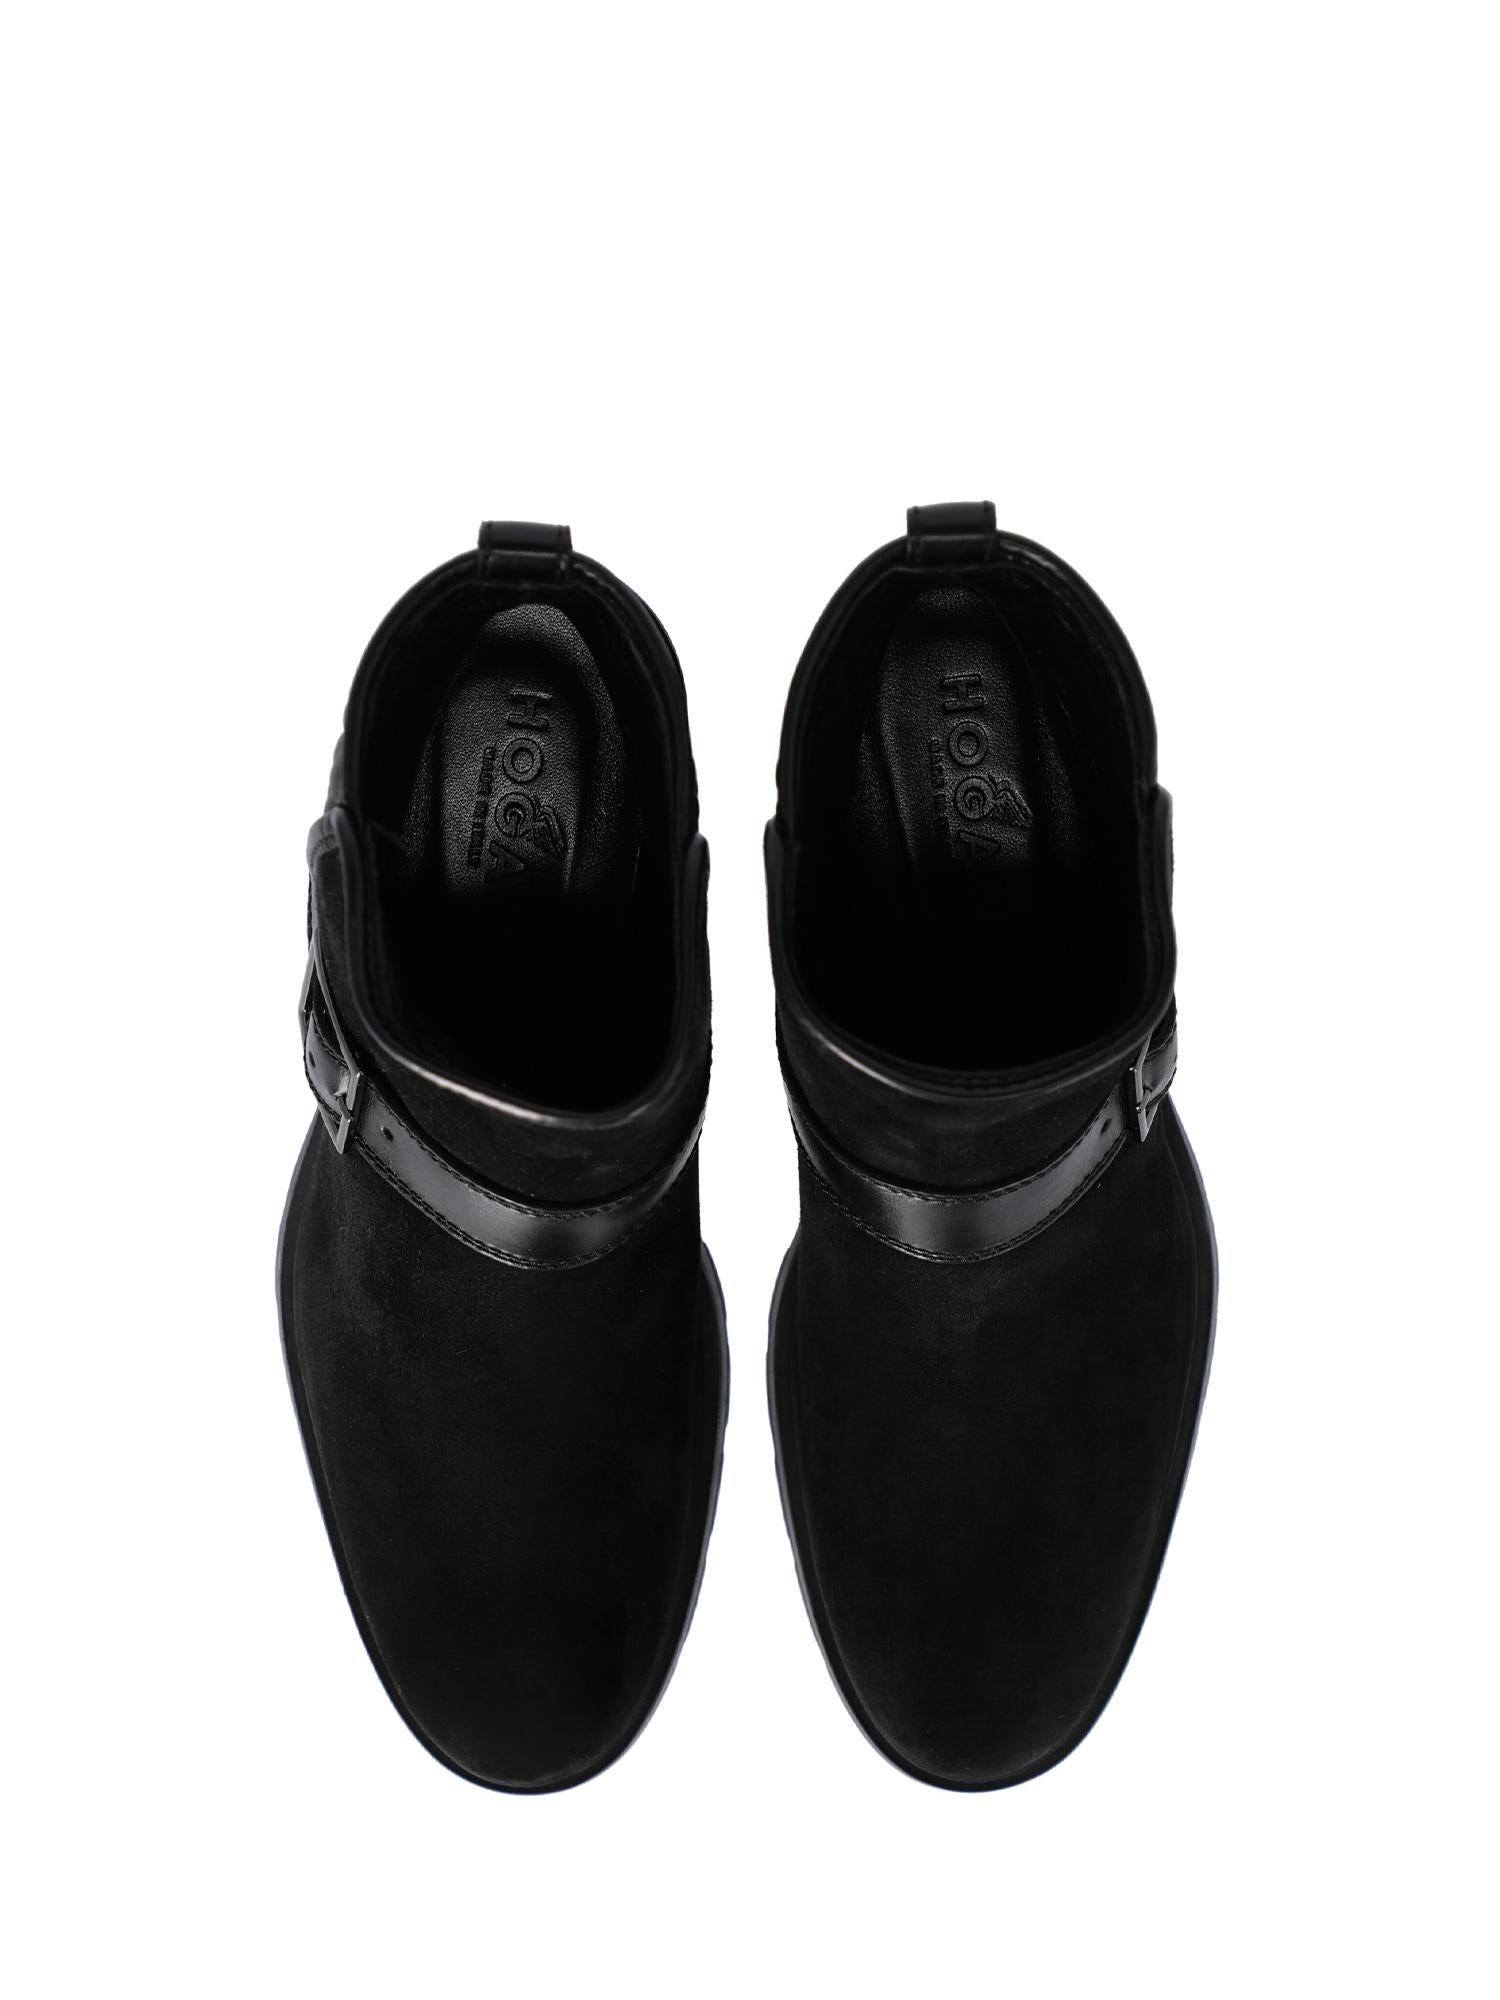 Hogan Woman Ankle boots Black EU 35.5 For Sale 1